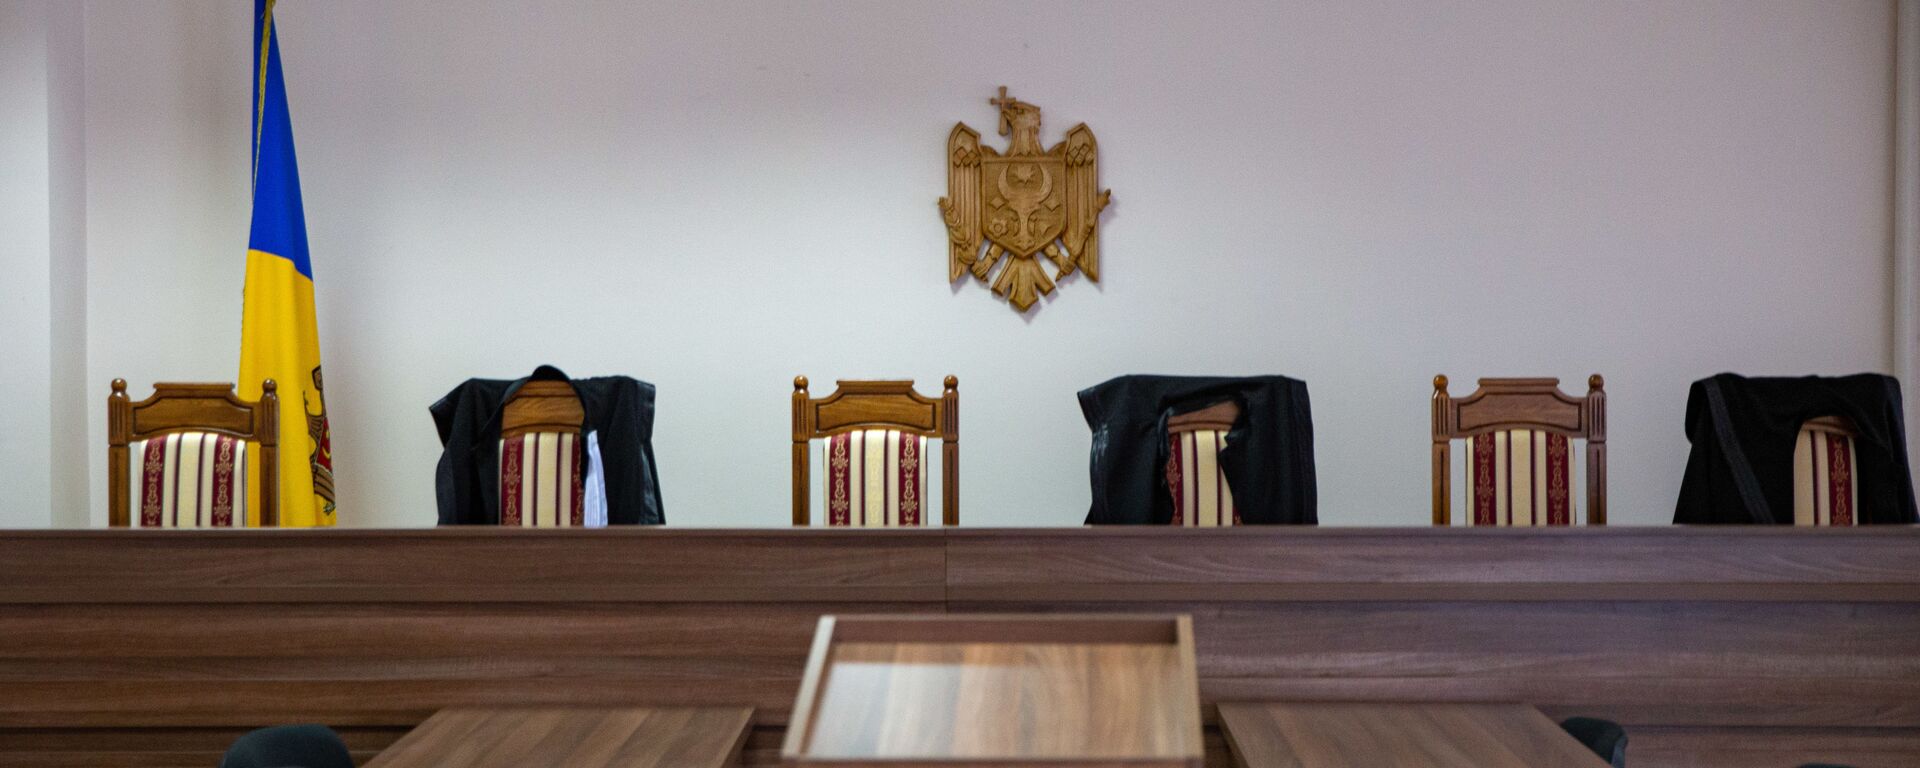 Sală de judecată - Sputnik Молдова, 1920, 15.09.2021